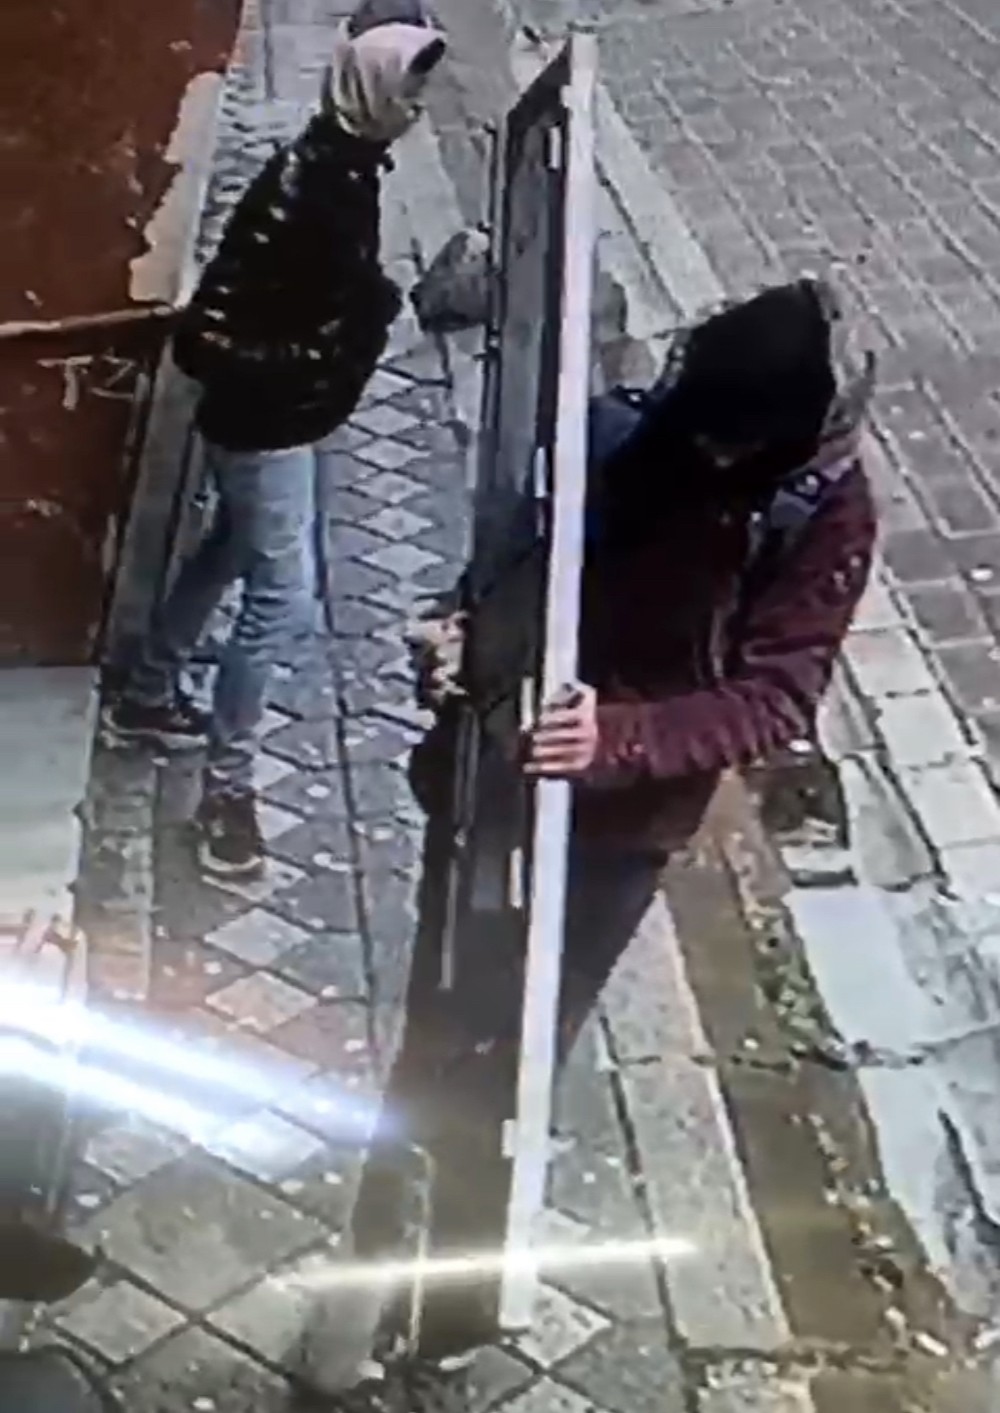 Zeytinburnu’nda binanın dış kapısını çalan hırsızlar kamerada #istanbul